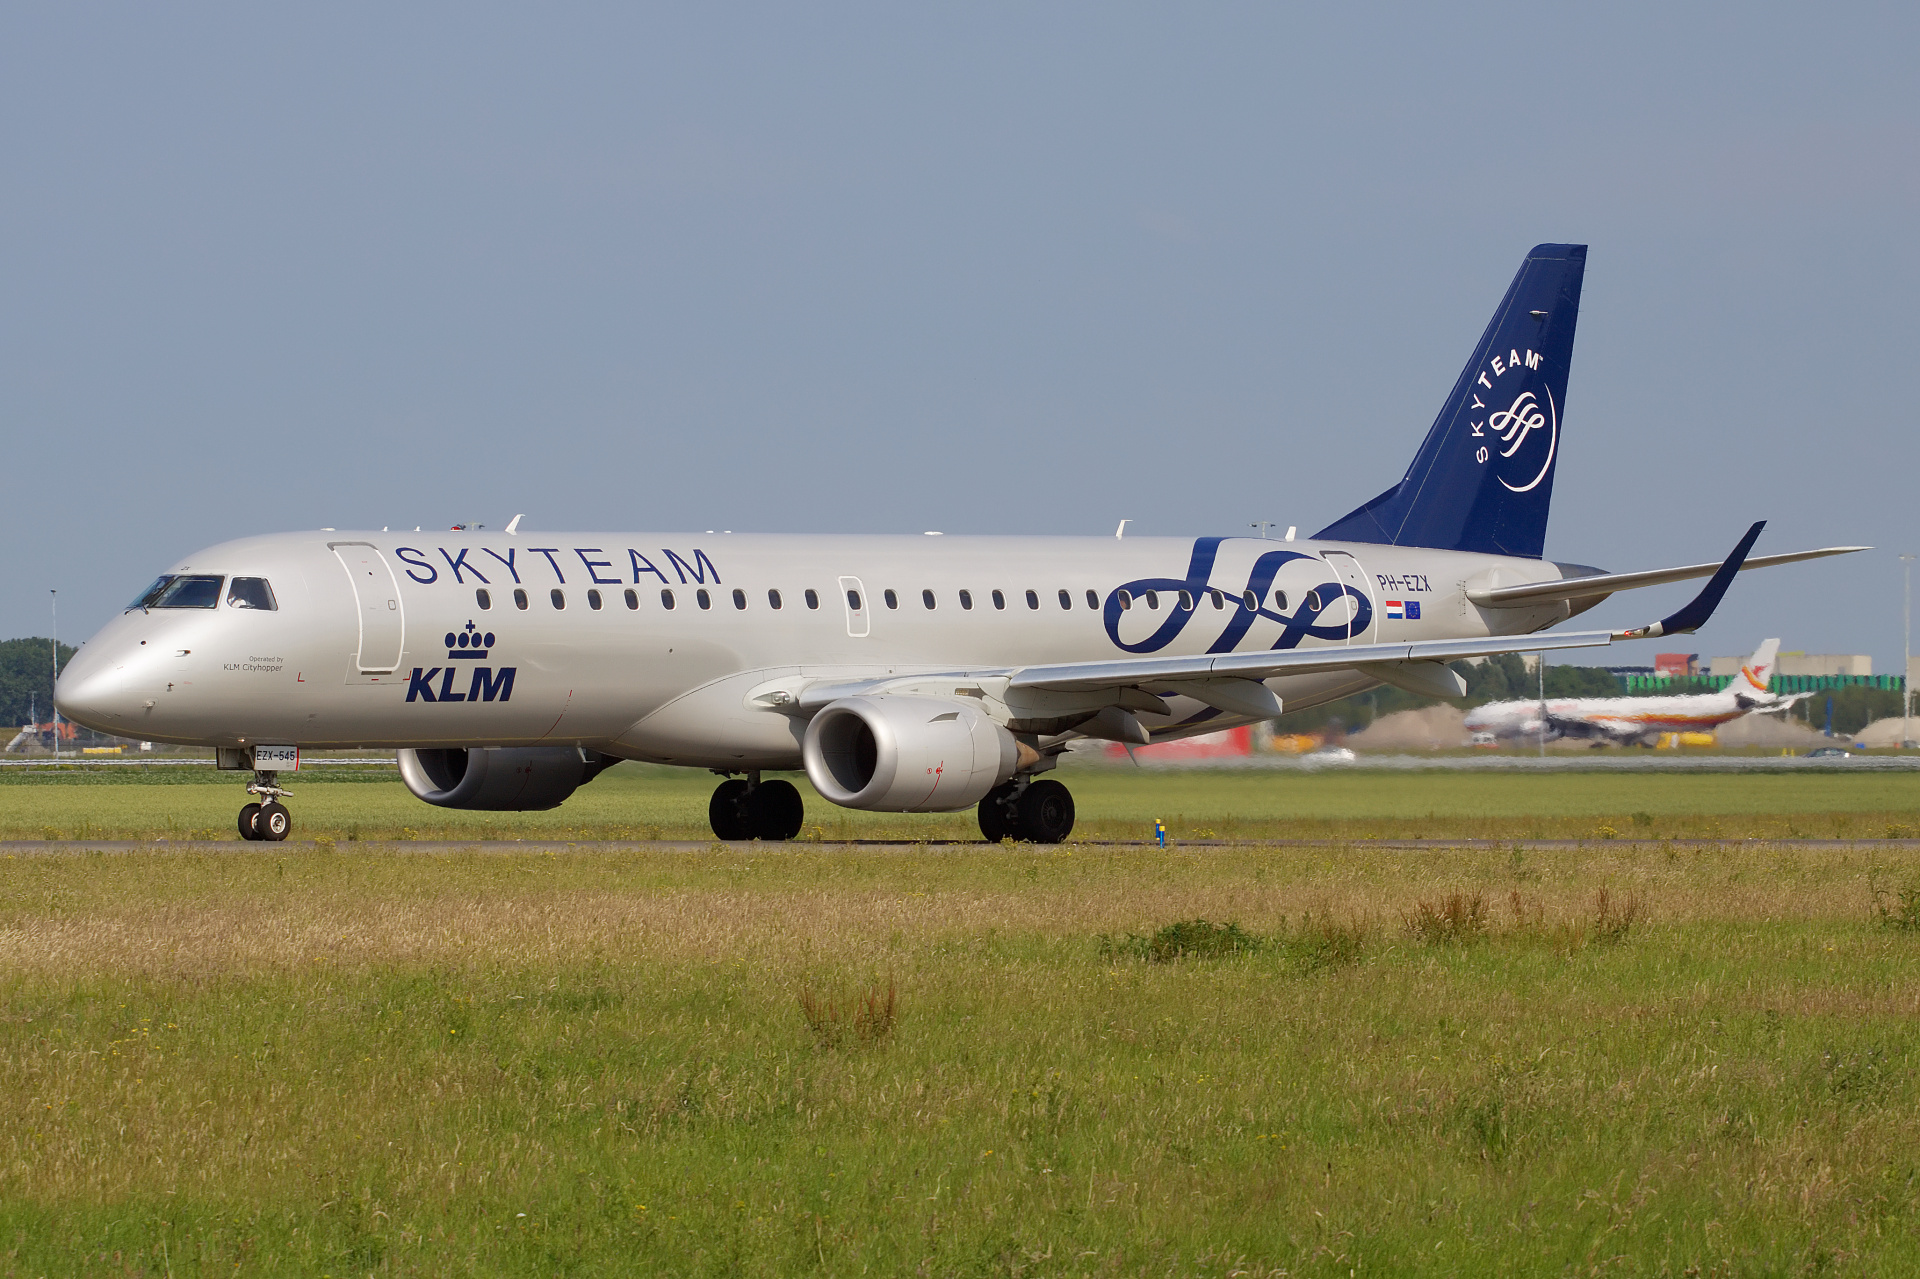 PH-EZX (SkyTeam livery) (Aircraft » Schiphol Spotting » Embraer E190 » KLM Cityhopper)